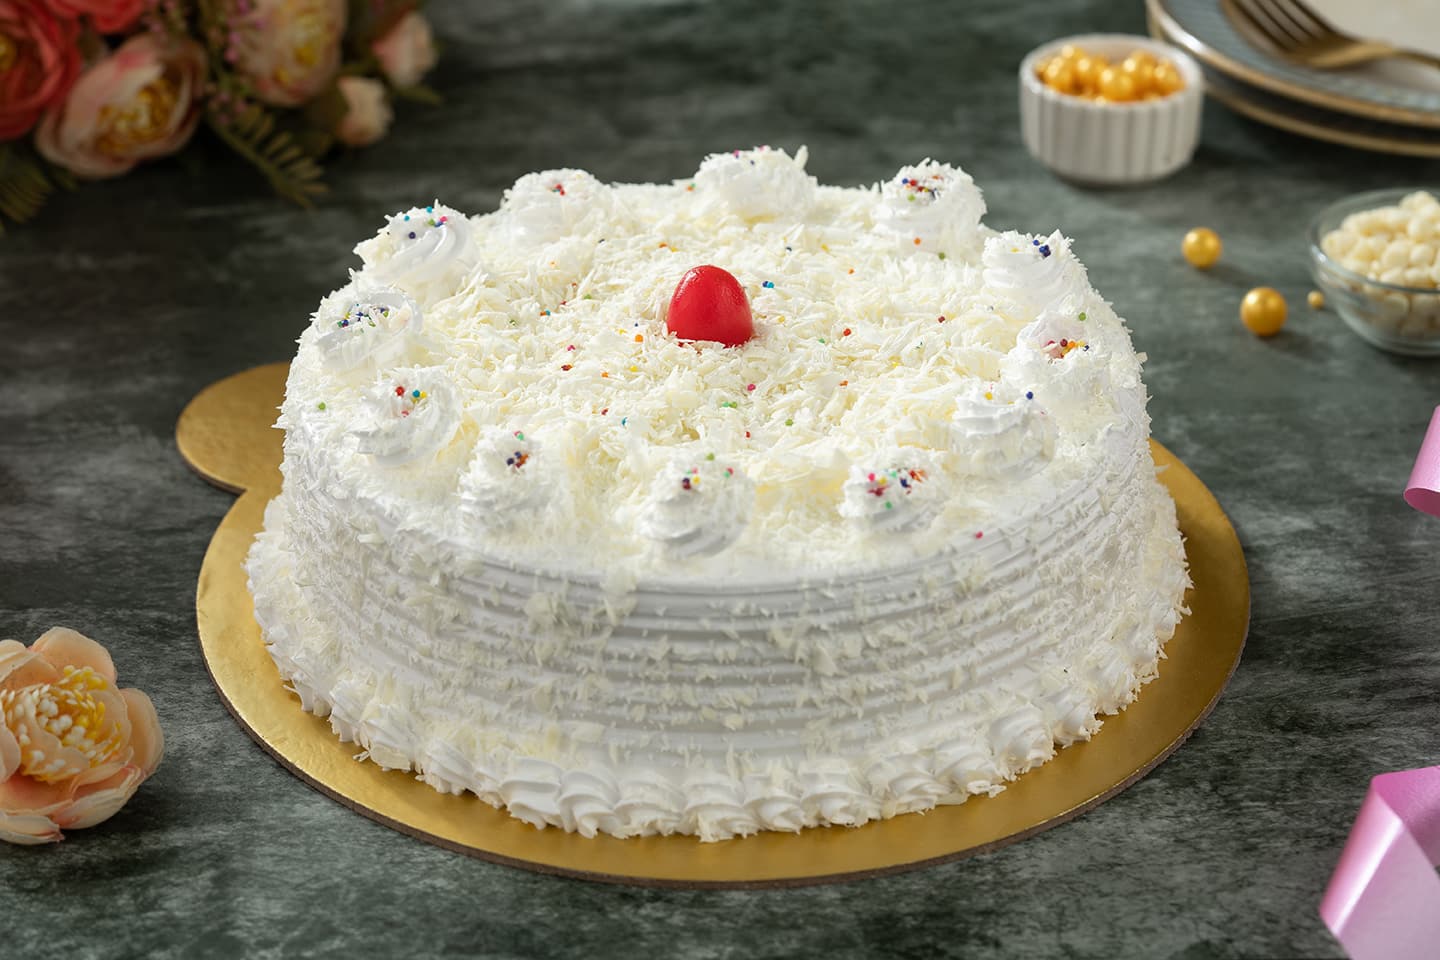 22:18, 07/05/2020]#bakery #bakerynearme #cakeshopnearme #delhi #cake24x7  #CakedeliveryinPrestigeShanthinekethanWhitefield #cakedeliveryinsouthdelhi  #onlinecakeservice #midnightcakedeliveryinncr #customcakes #birthdaycakes  #cakebakeshop #cakestorenearme ...